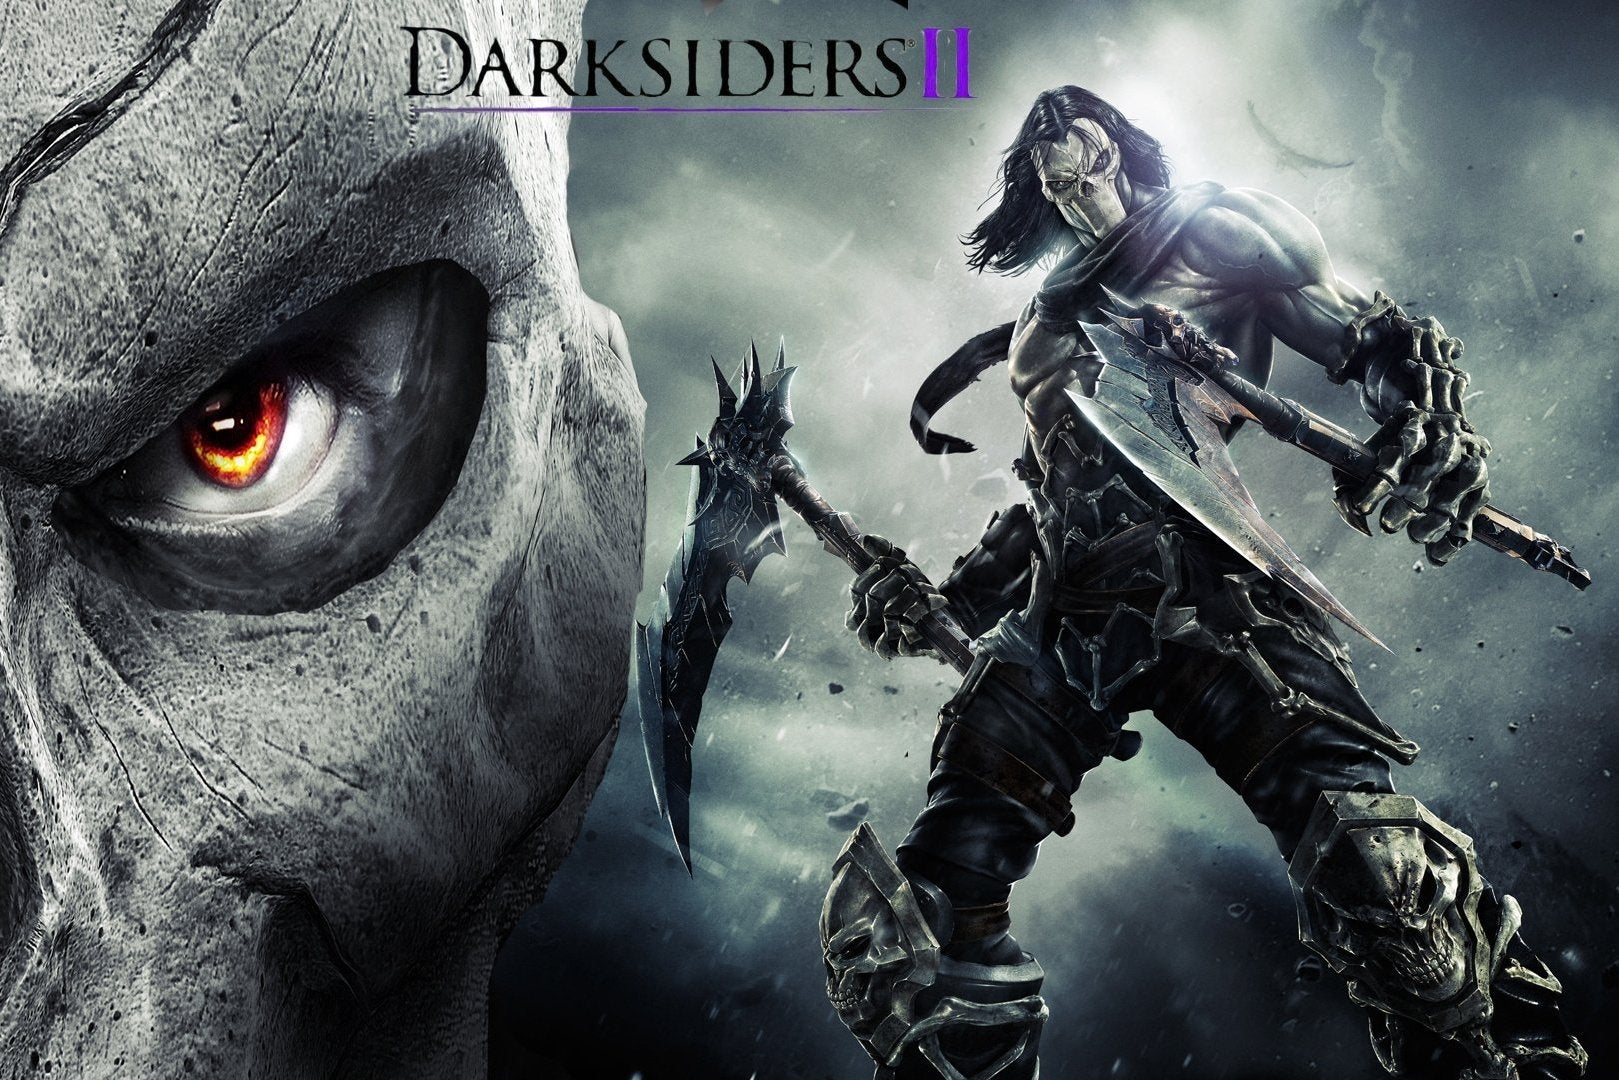 Imagen para Amazon filtra Darksiders II: Definitive Edition para PlayStation 4